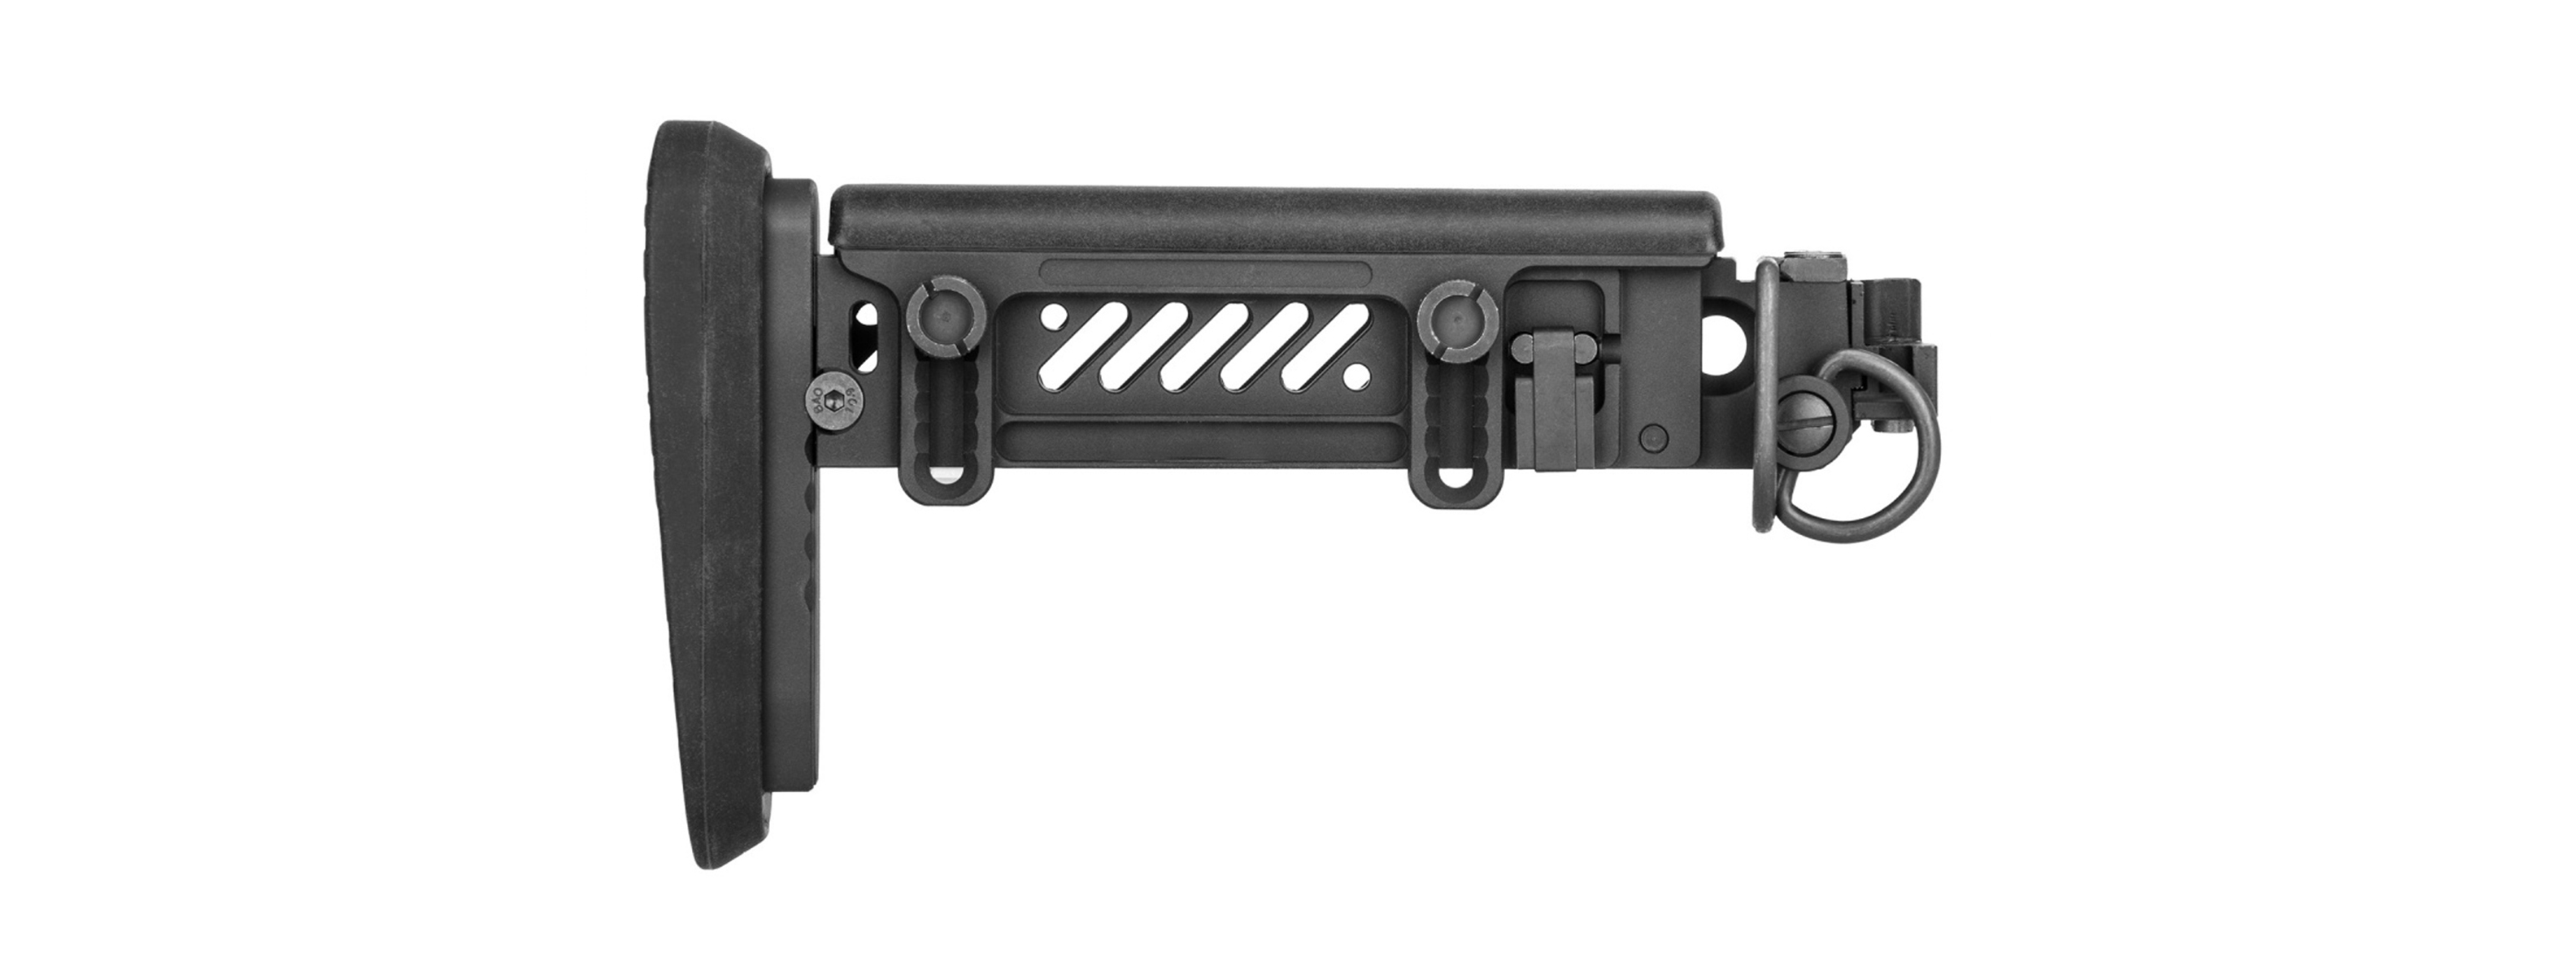 5KU PT-1 AK Side Folding Stock for E&L AK (Gen 2) - Click Image to Close